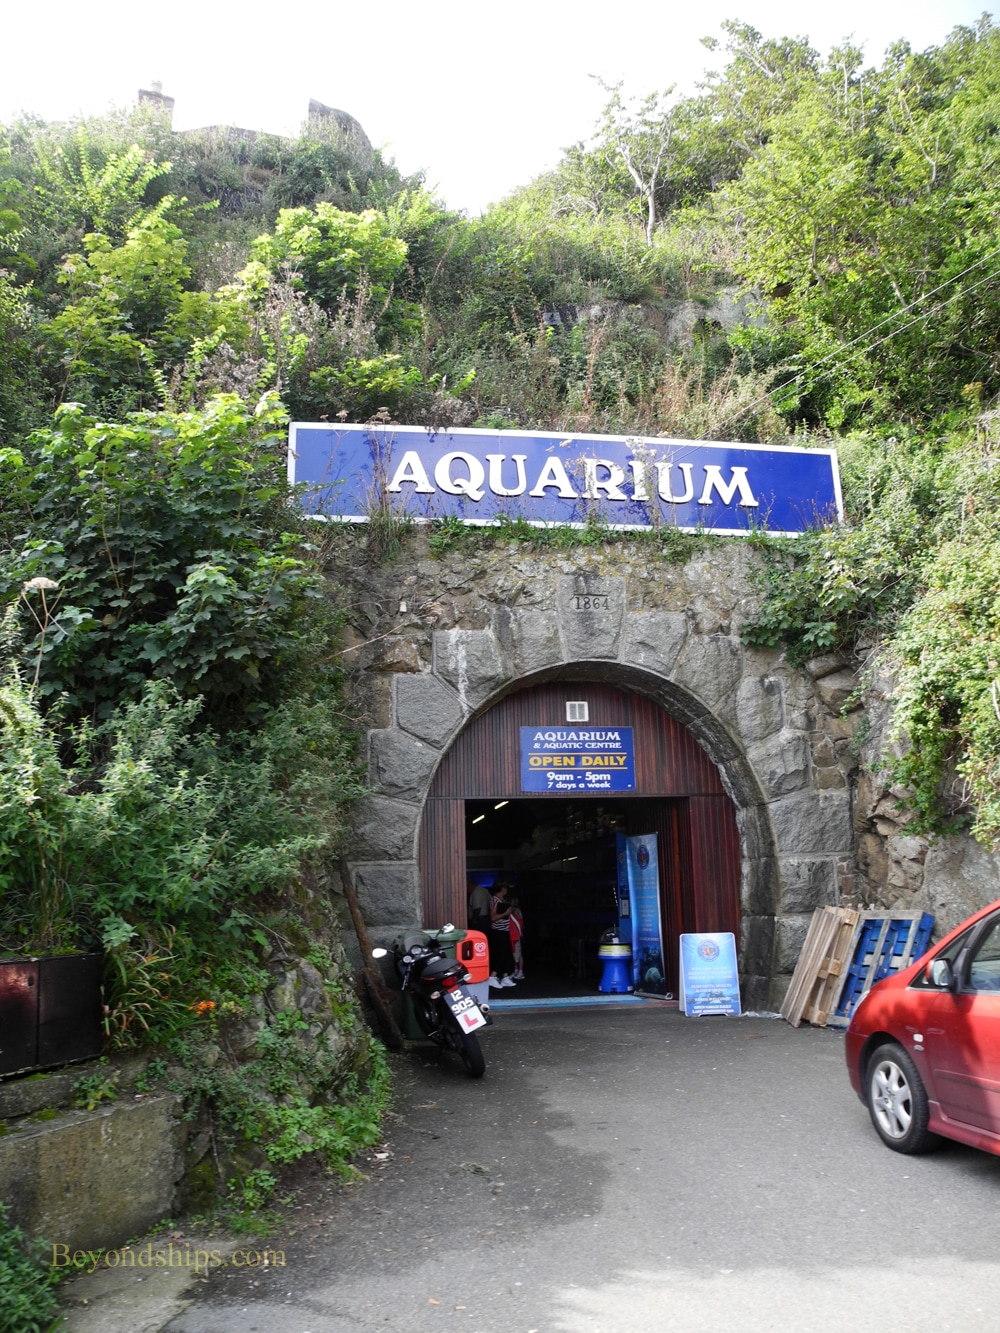 Aquarium, Guernsey